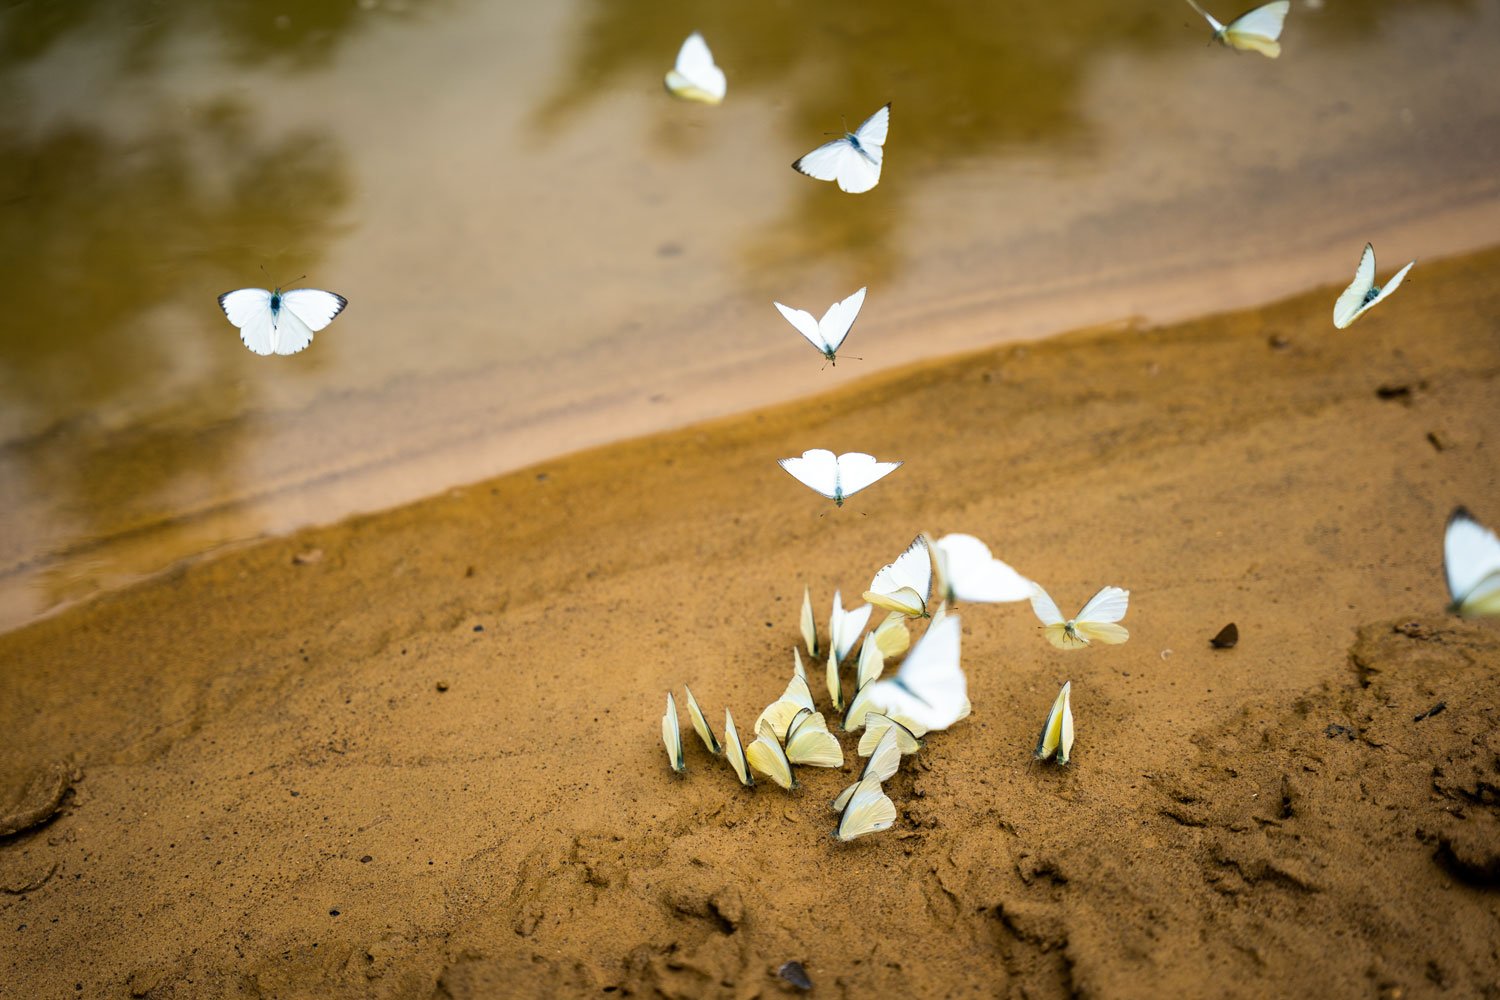 Vào tháng 4 và tháng 5, du  khách sẽ được ngắm khung cảnh bướm bay rợp trời khi tham gia các hành trình khám phá hệ thống hang động Tú Làn